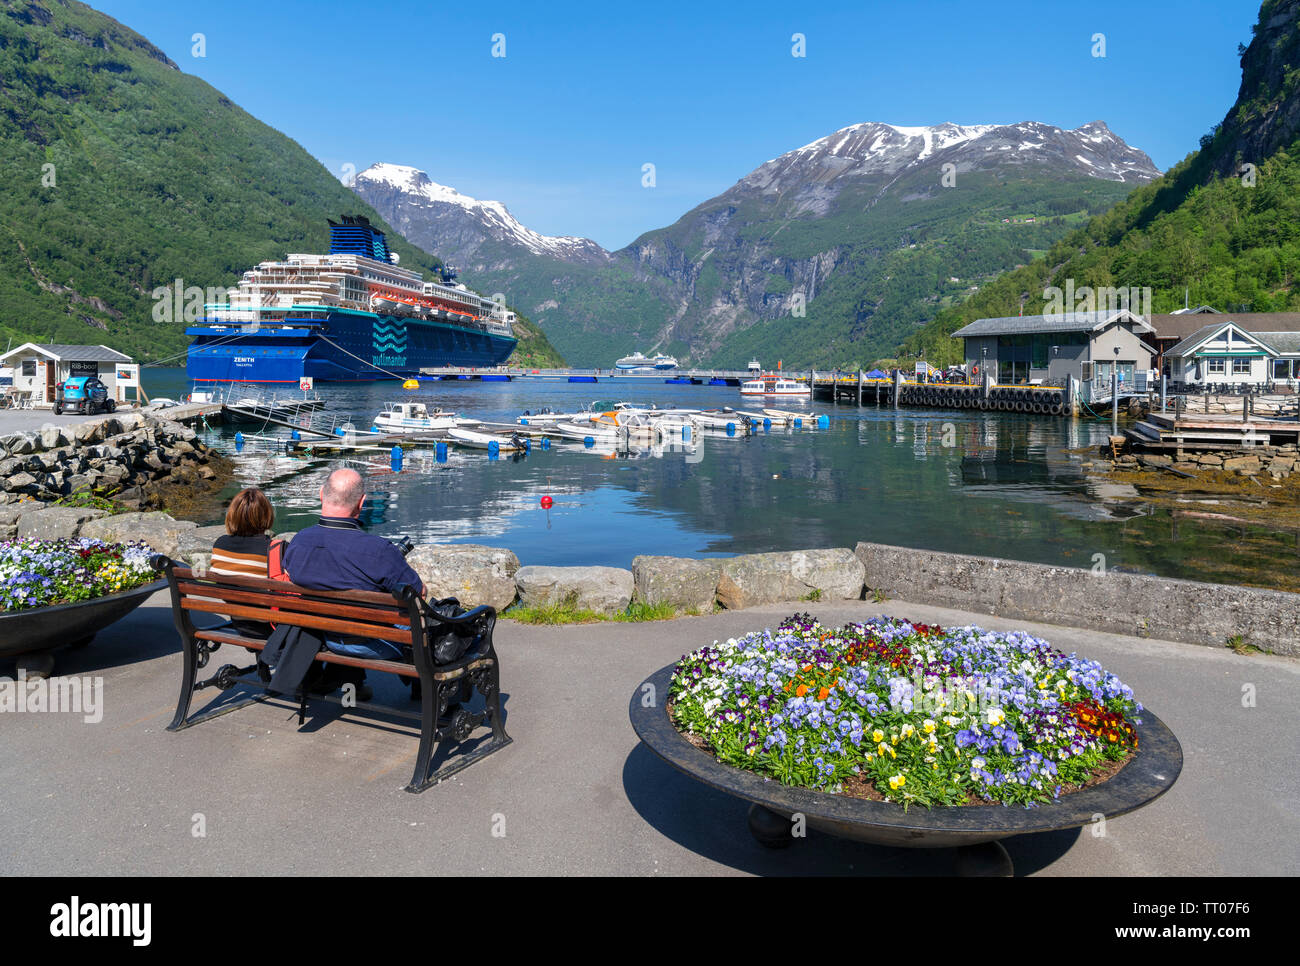 Couple assis sur un banc avec le navire de croisière Pullmantur Zenith dans le port derrière, Geiranger, Møre og Romsdal, Norvège, Sunnmøre Banque D'Images